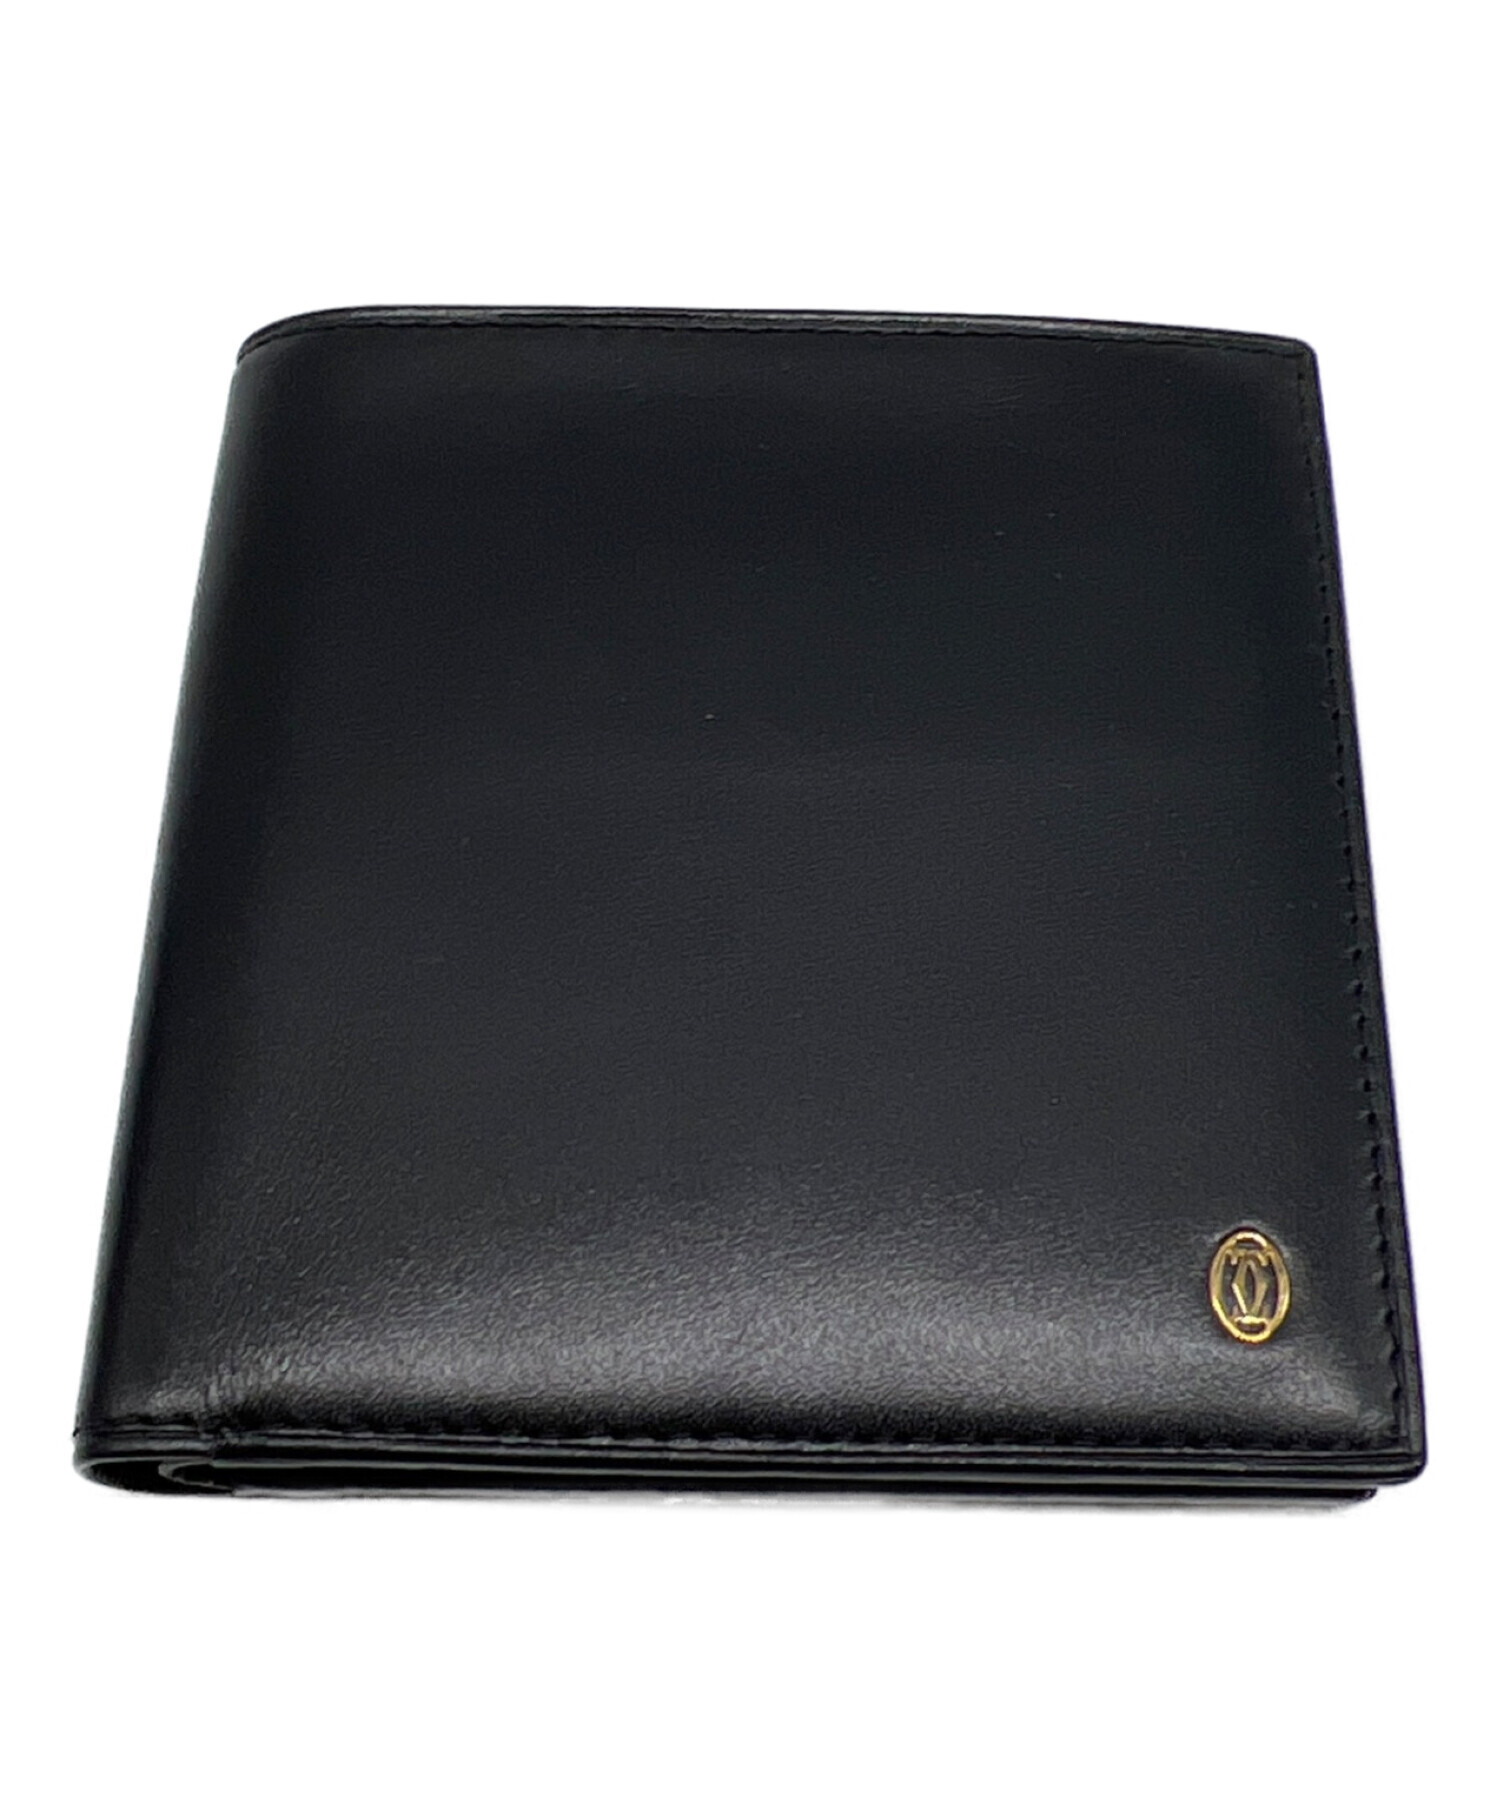 【極美品・付属品完備】Cartier 二つ折り財布 ブラック マスト ドゥ状態ランク…A